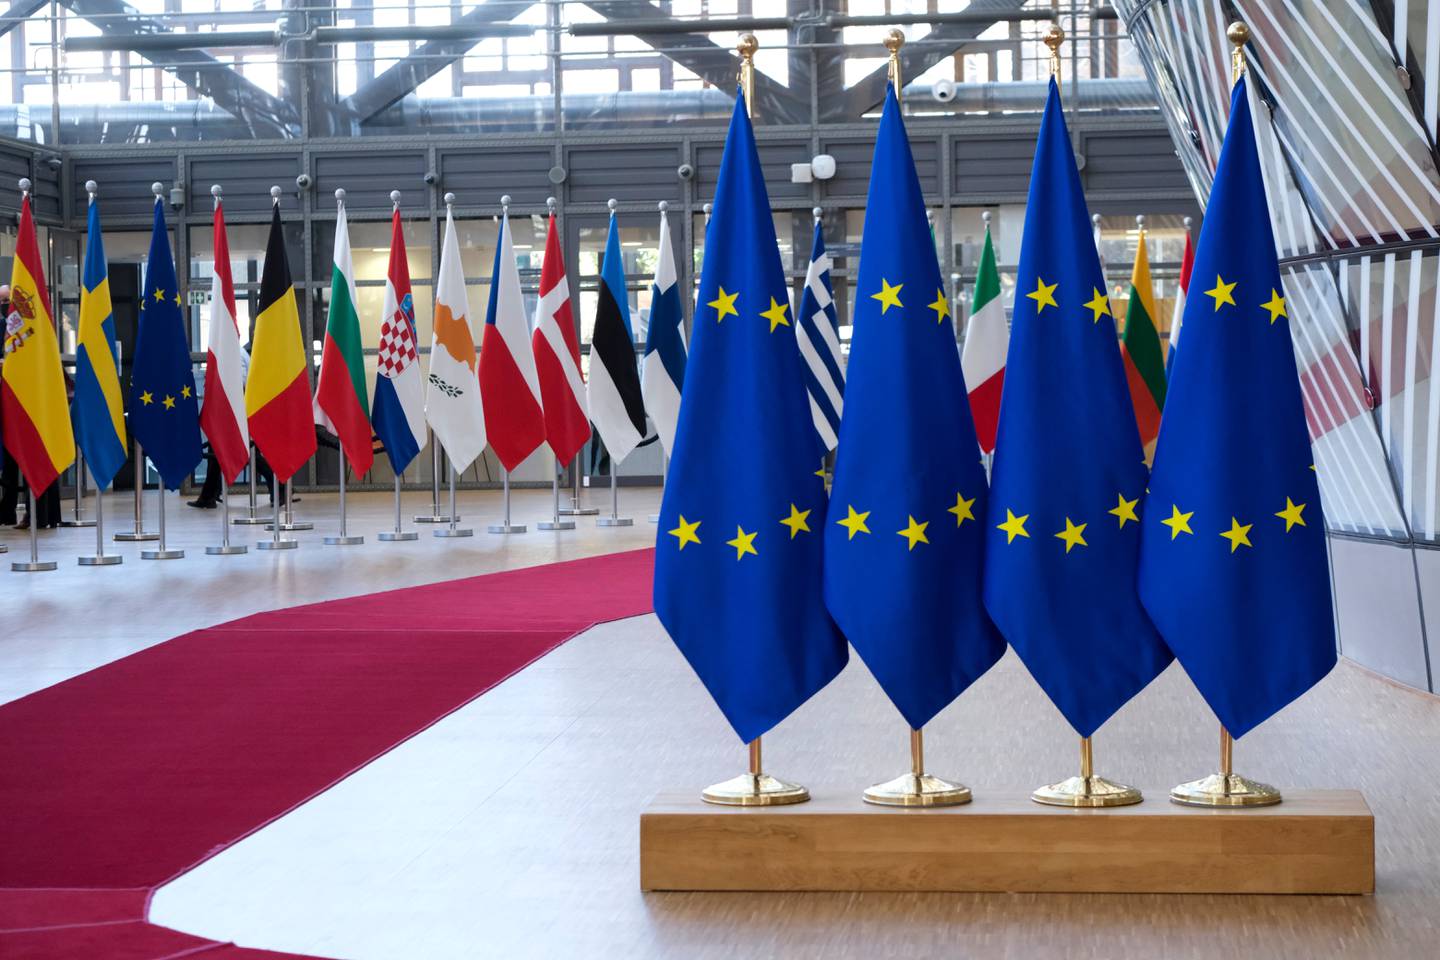 Banderas de la Unión Europea (UE) en el Consejo de la UE.